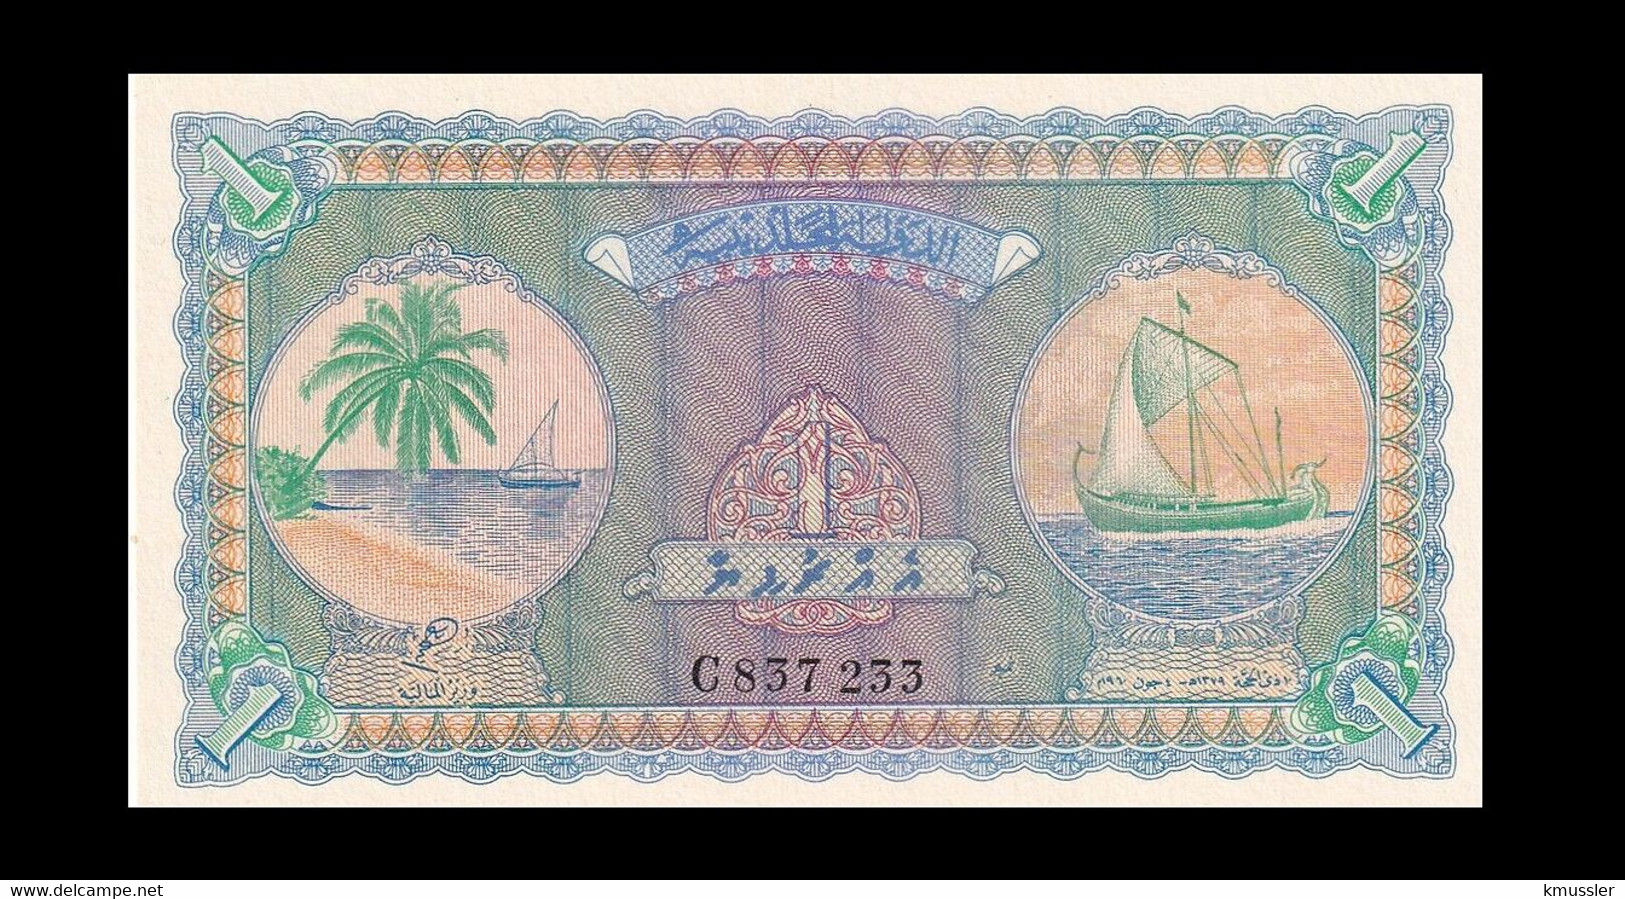 # # # Seltene ältere Banknote Malediven (Maledives) 1 Rufiya UNC # # # - Maldiven